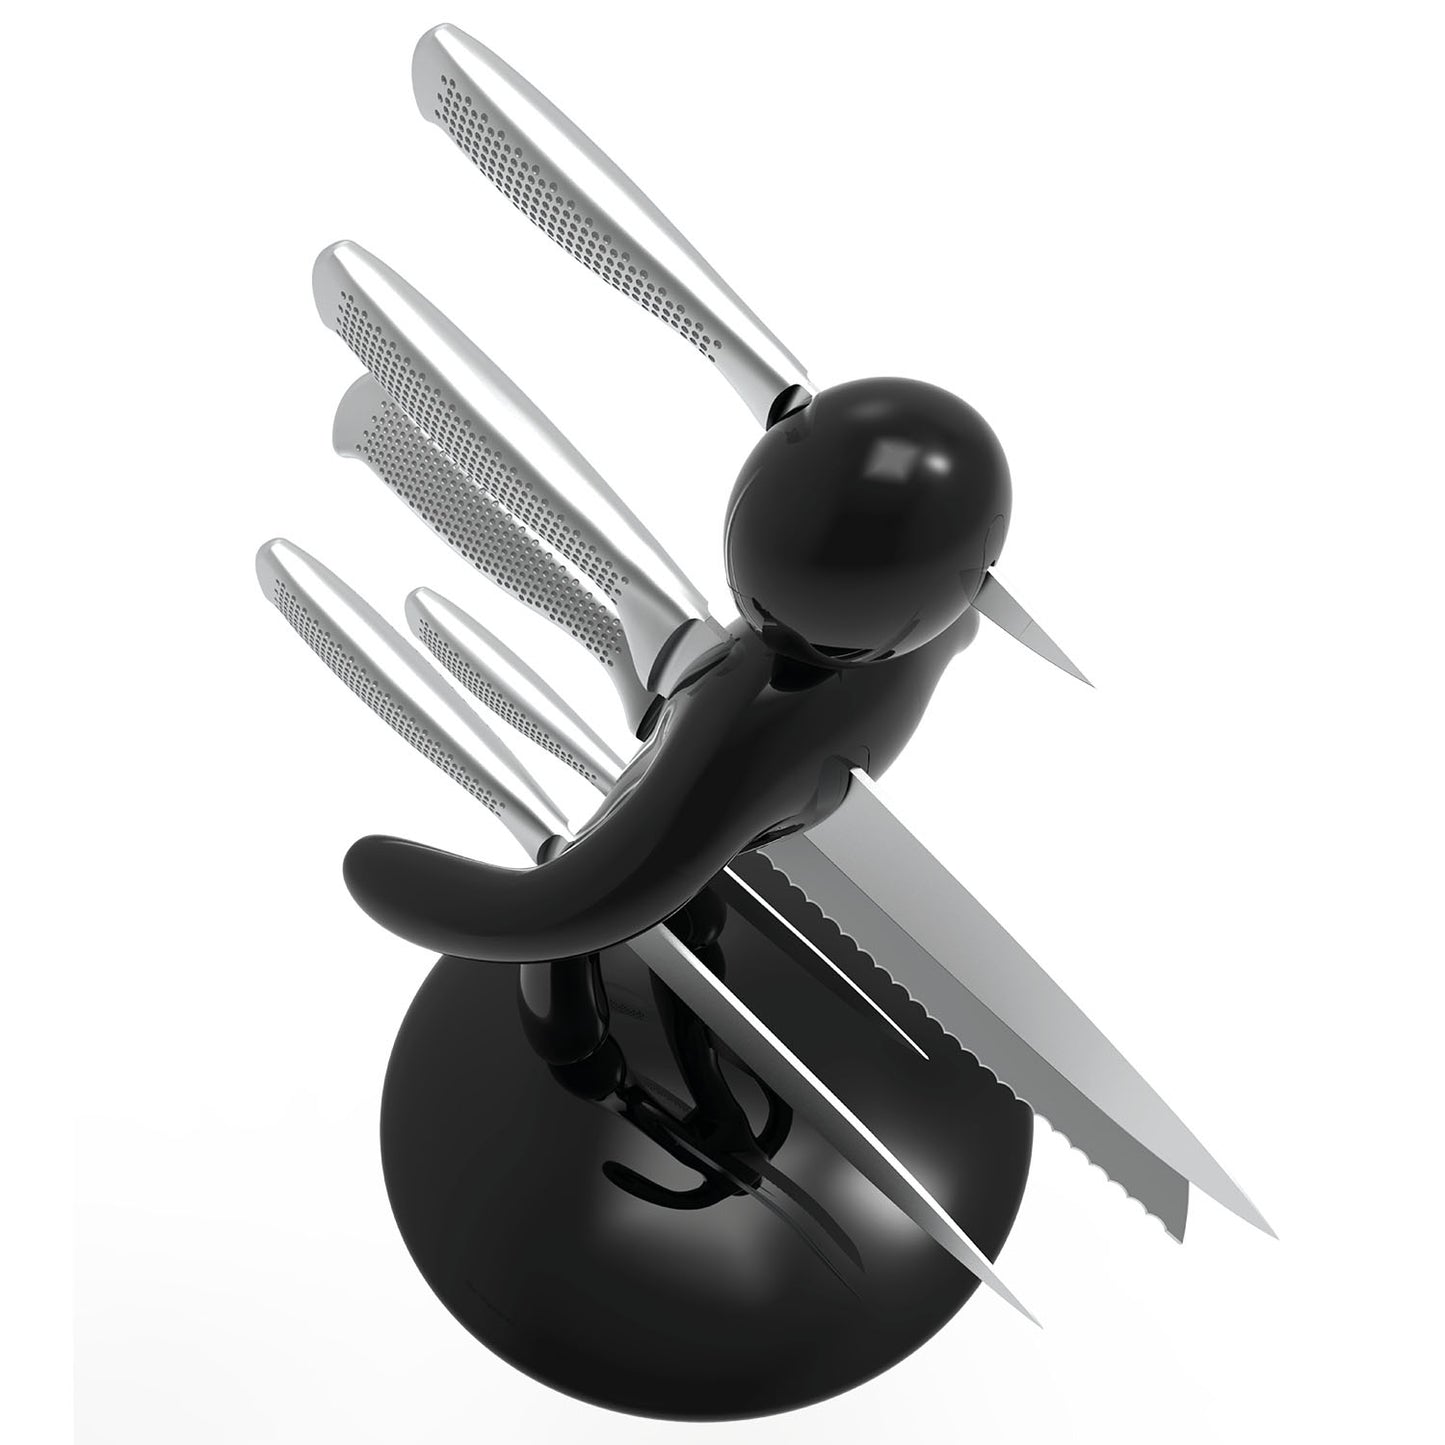 Voodoo/TheEx “Classic Edition” 刀具套装 - 黑色塑料刀架（不带刀套）